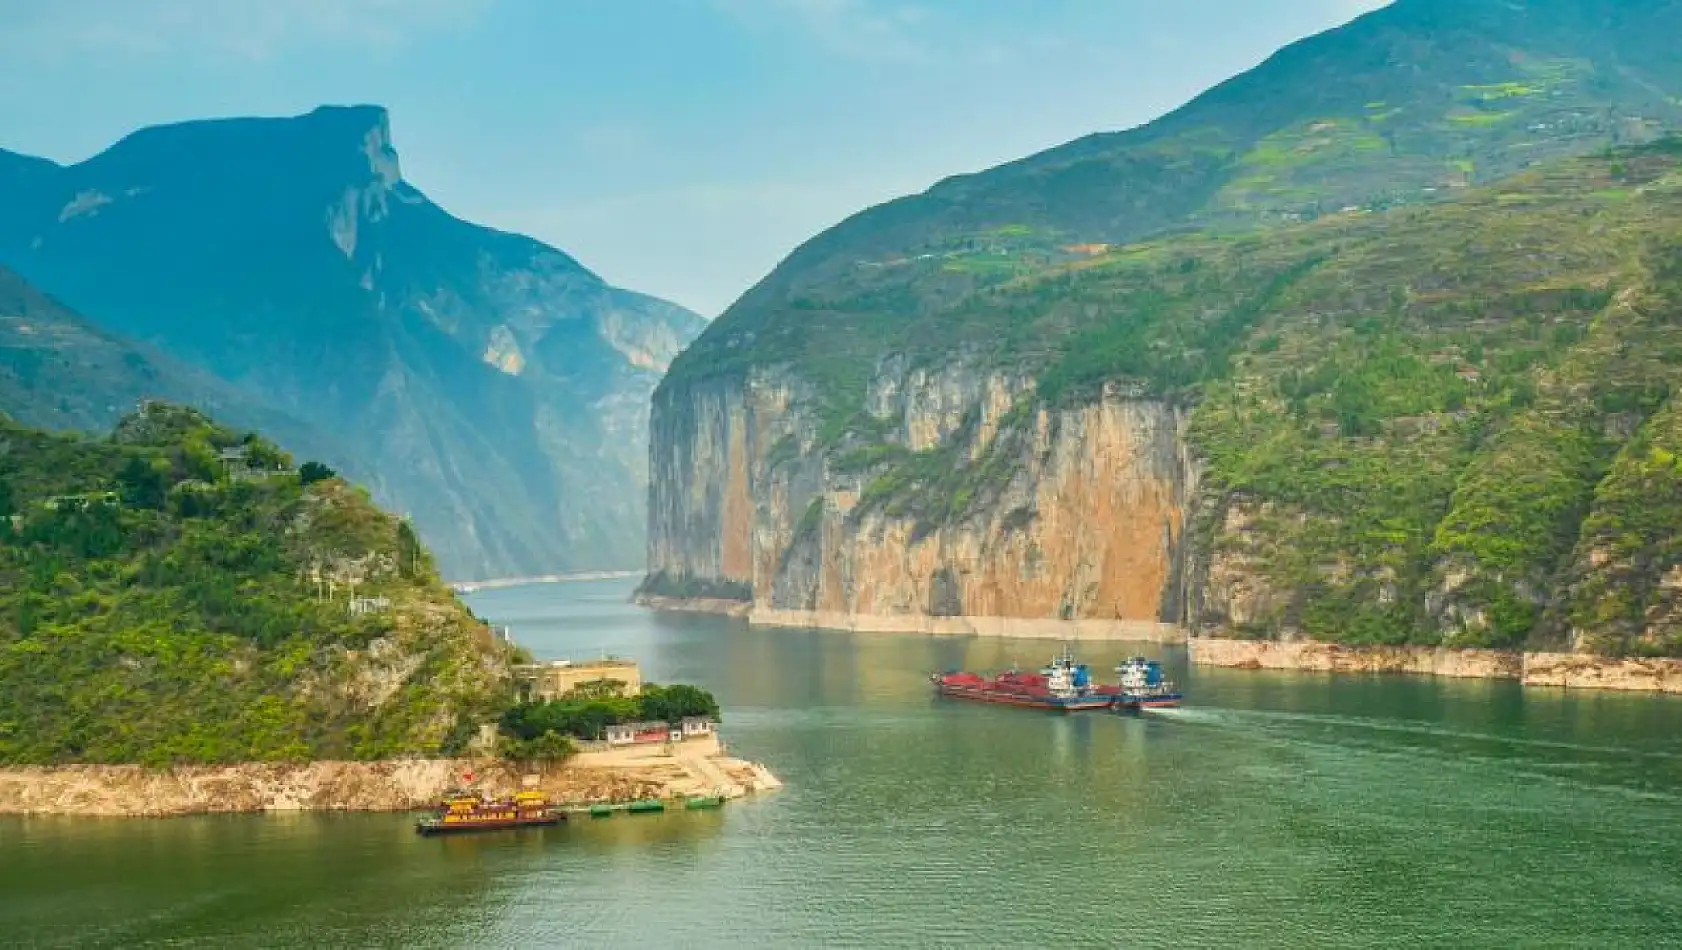 Yangtze Nehri nerededir? Yangtze Nehri'nin dünya için önemi nedir?